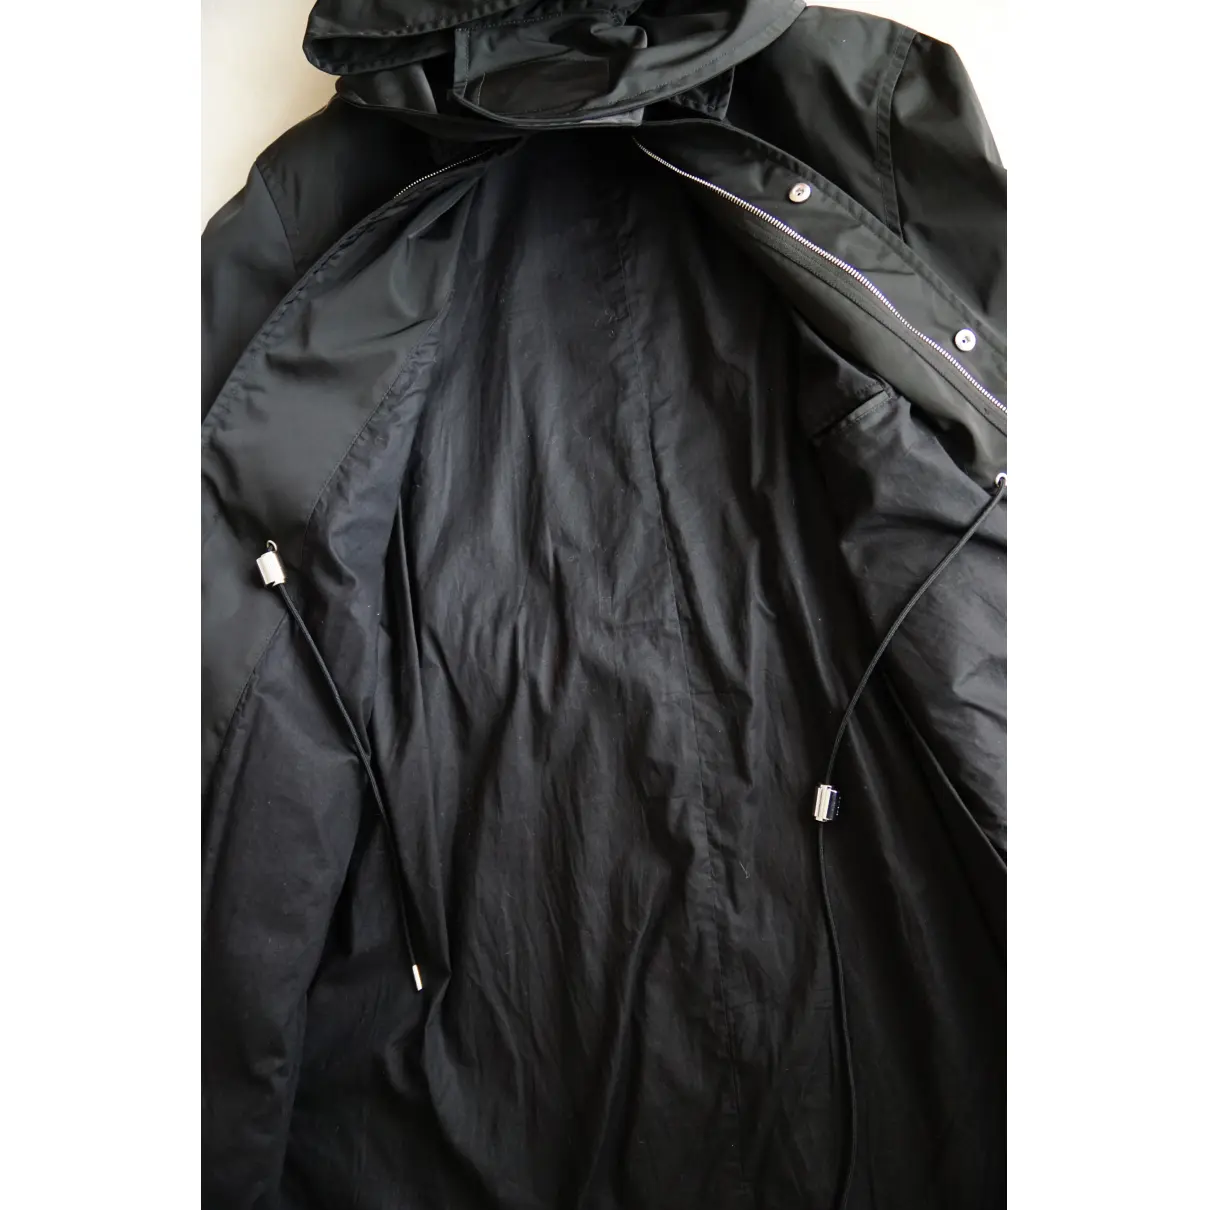 Buy Raf Simons Black Polyester Coat online